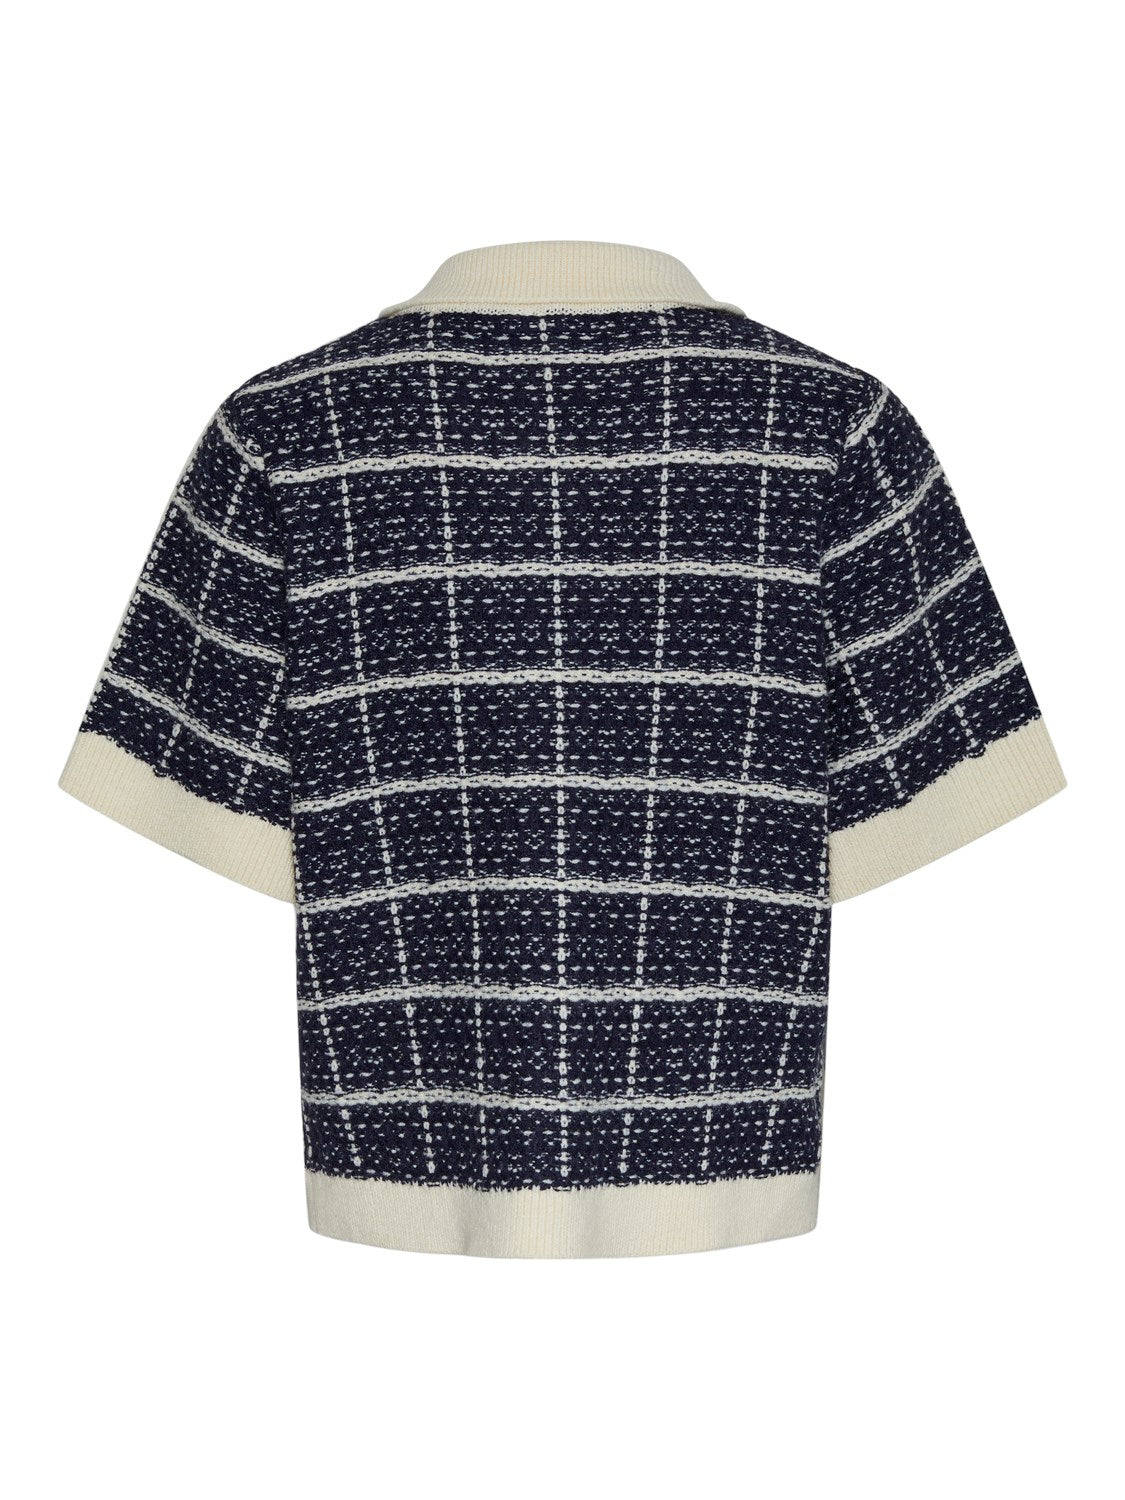 Yaslivia Ss Knit Cardigan - Navy Blazer Birch